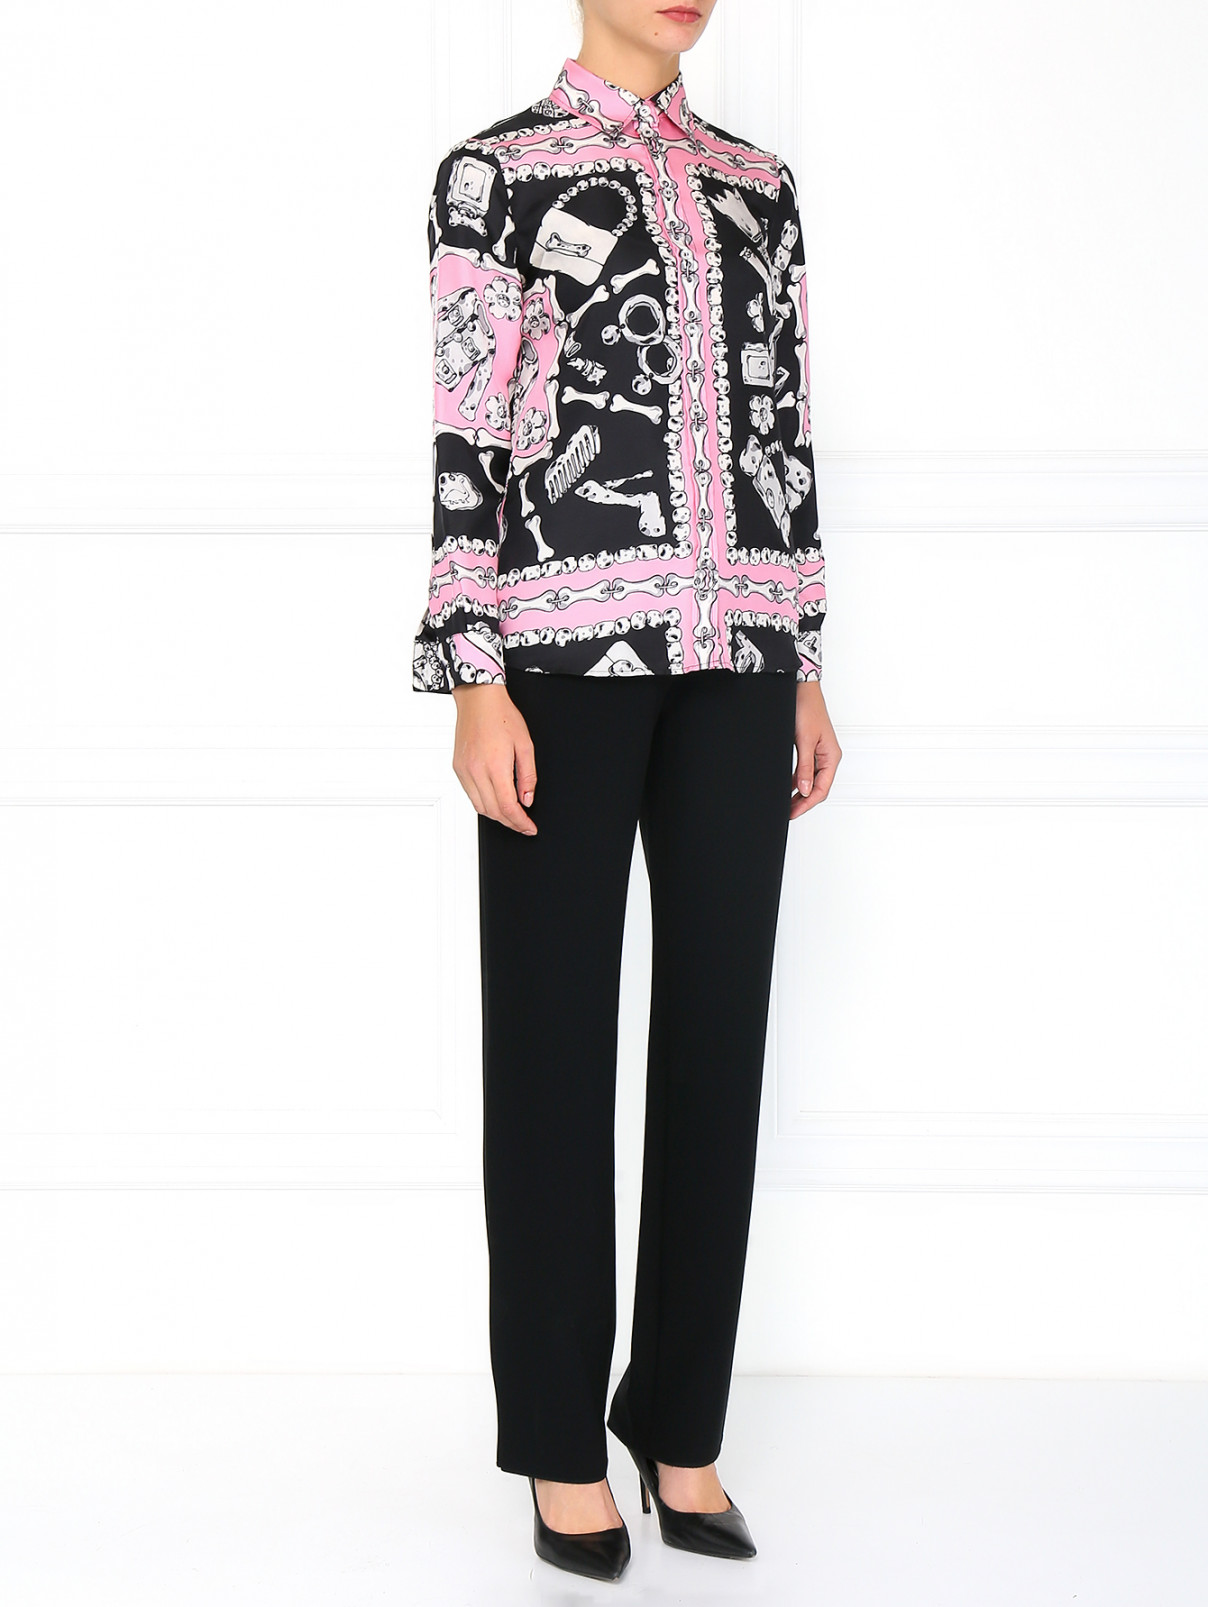 Шелковая блуза с принтом Moschino Cheap&Chic  –  Модель Общий вид  – Цвет:  Розовый